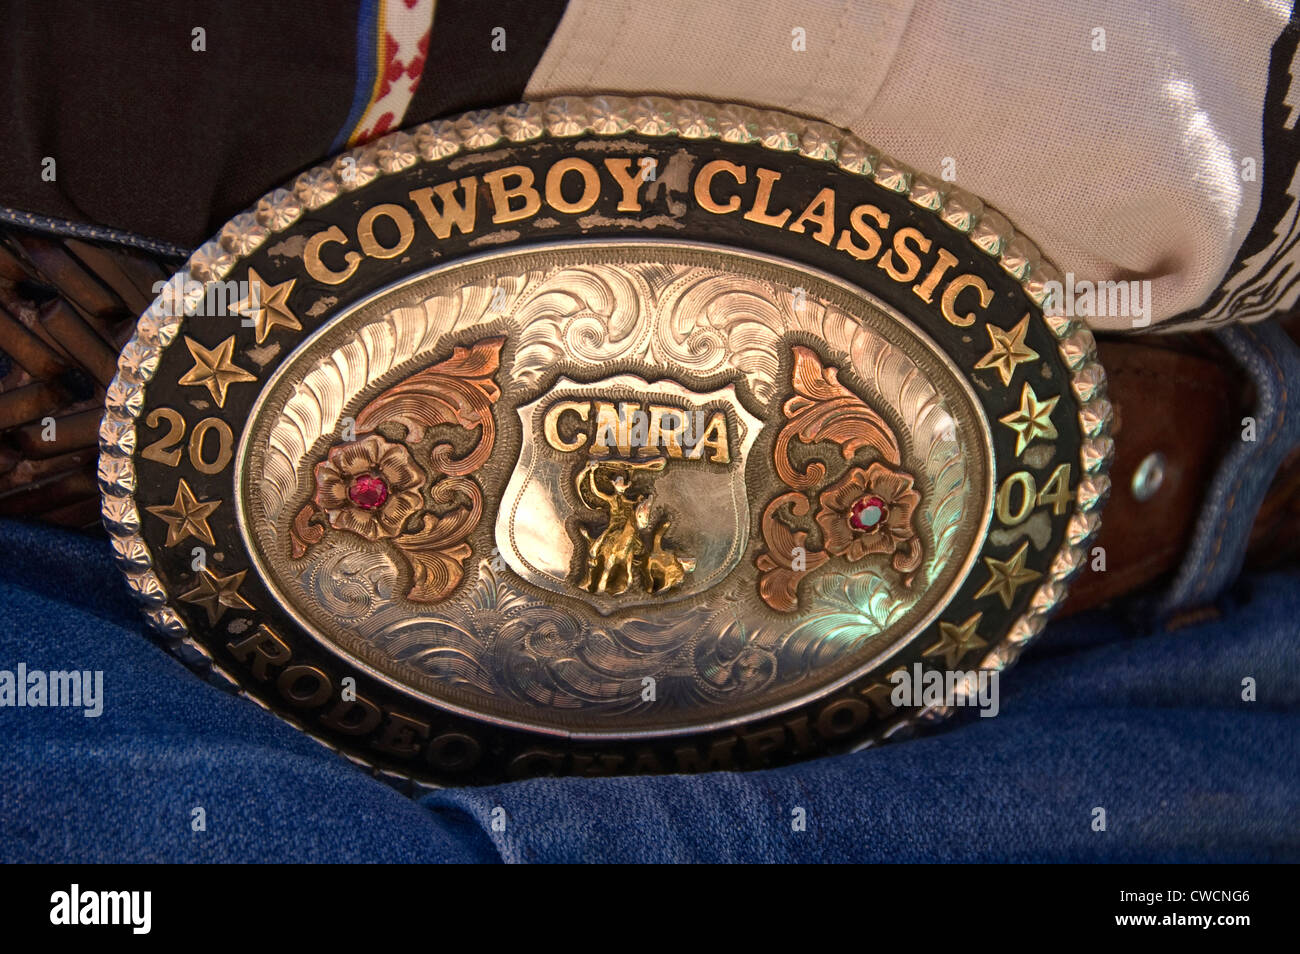 Cowboy belt buckle immagini e fotografie stock ad alta risoluzione - Alamy